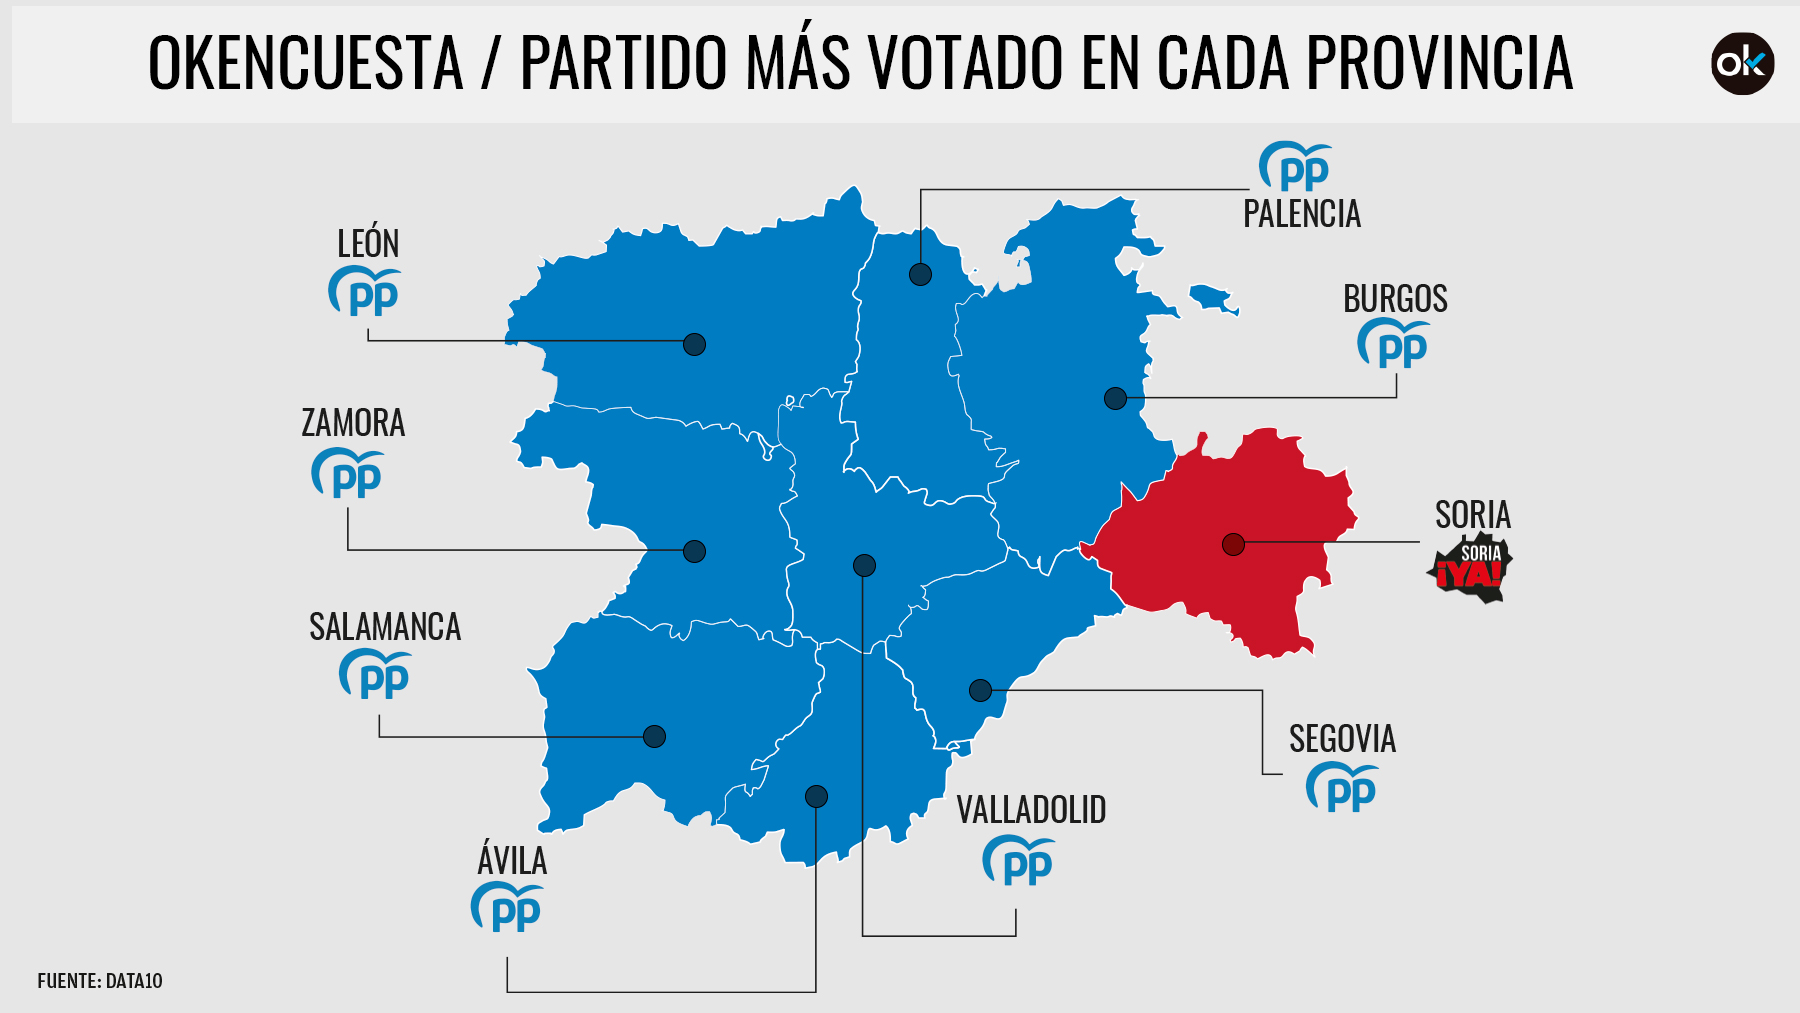 El PP gana en todas las provincias menos en Soria